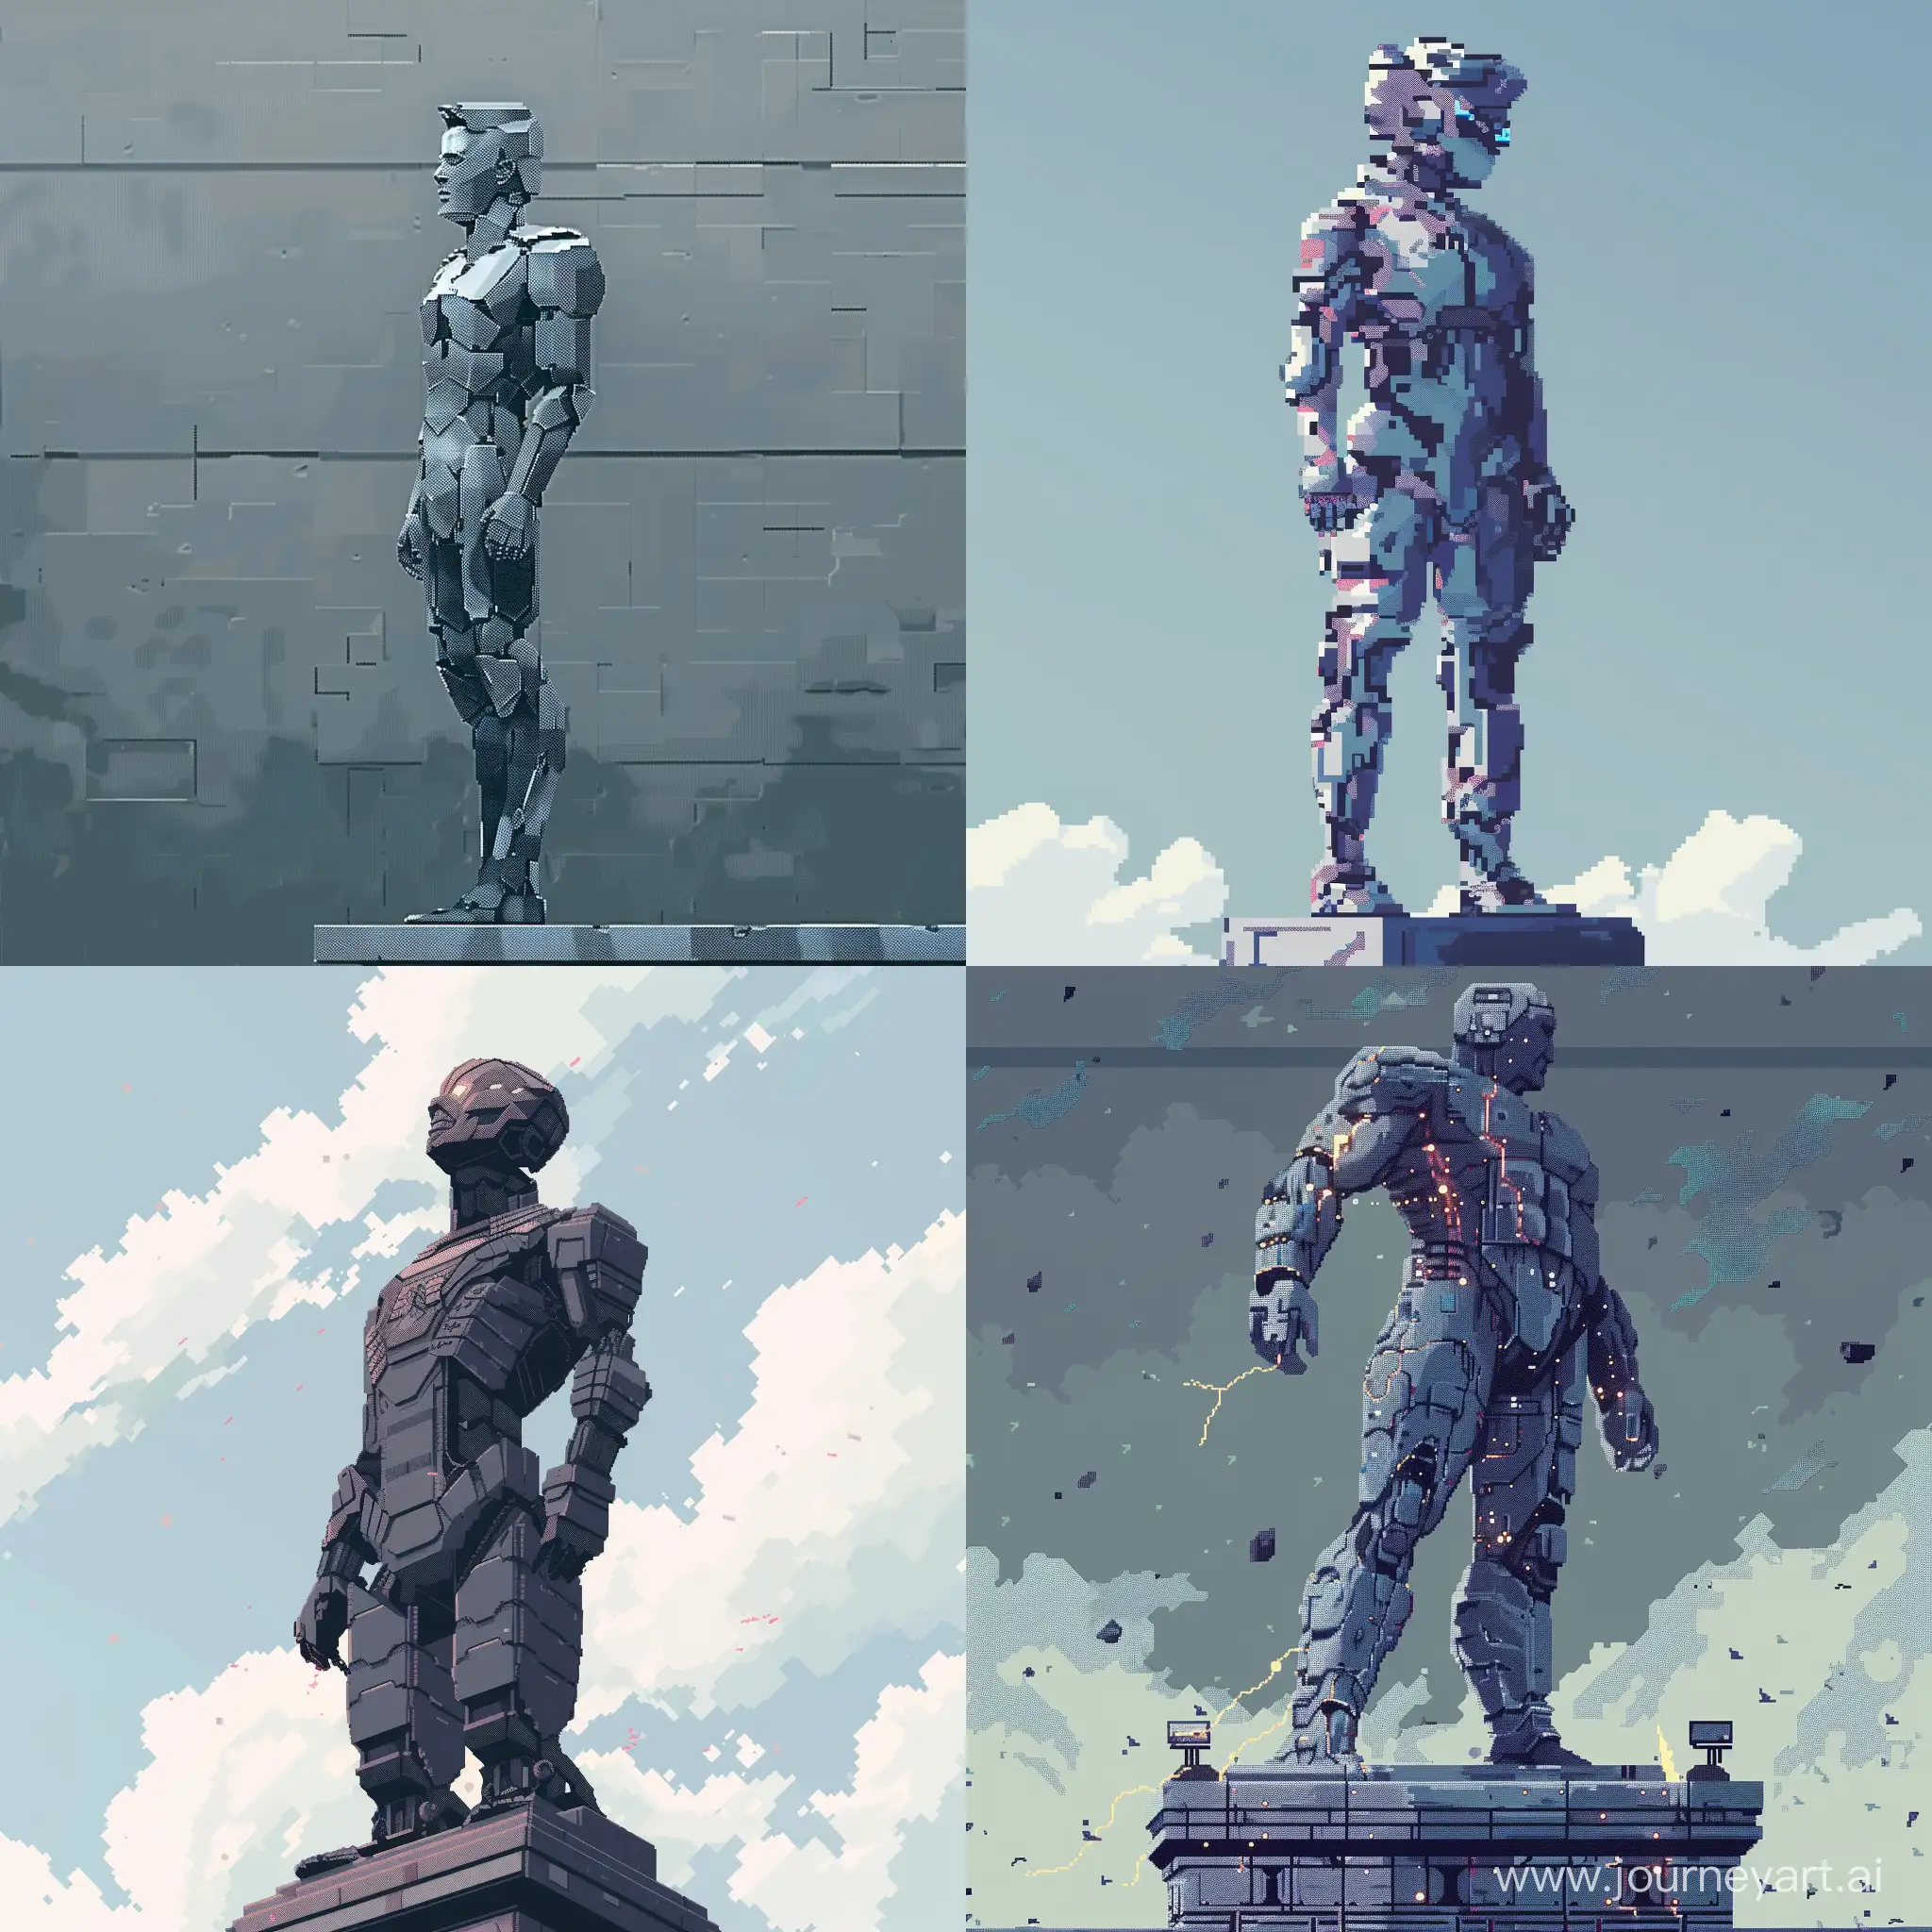 A brutalist statue of a futuristic man with futuristic outfit pixel art